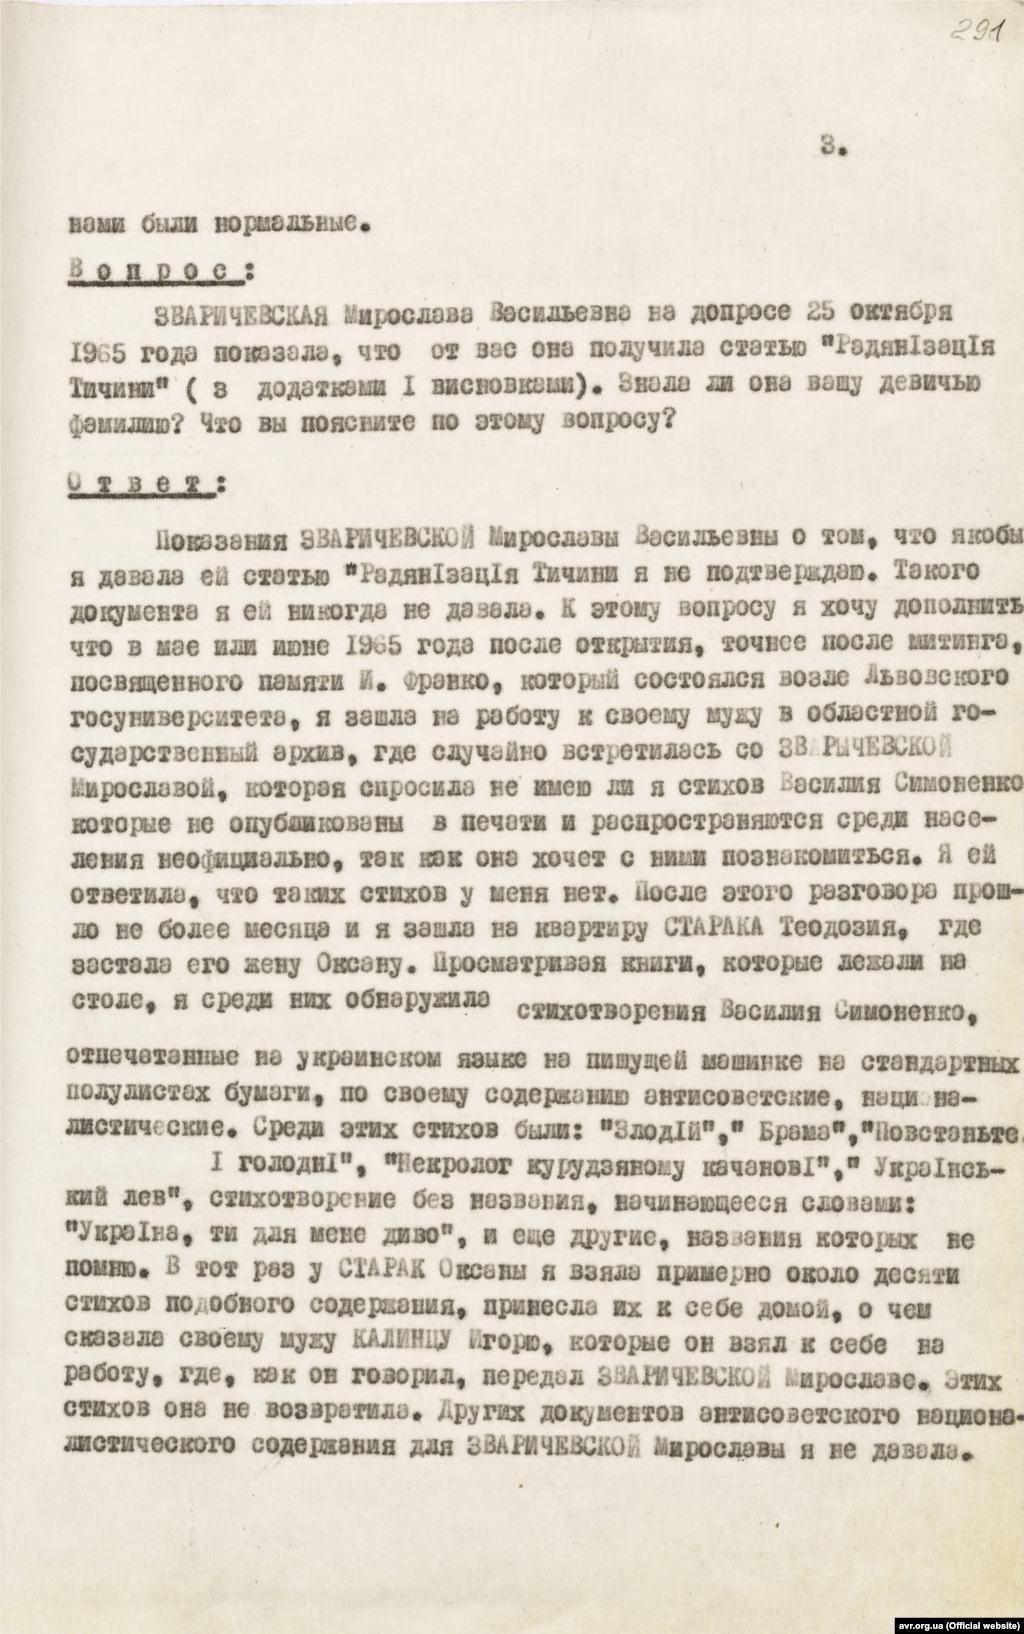 Копія протоколу допиту свідка Ірини Калинець в рамках кримінального провадження стосовно Богдана Гориня від 11 листопада 1965 року (стр. 3)